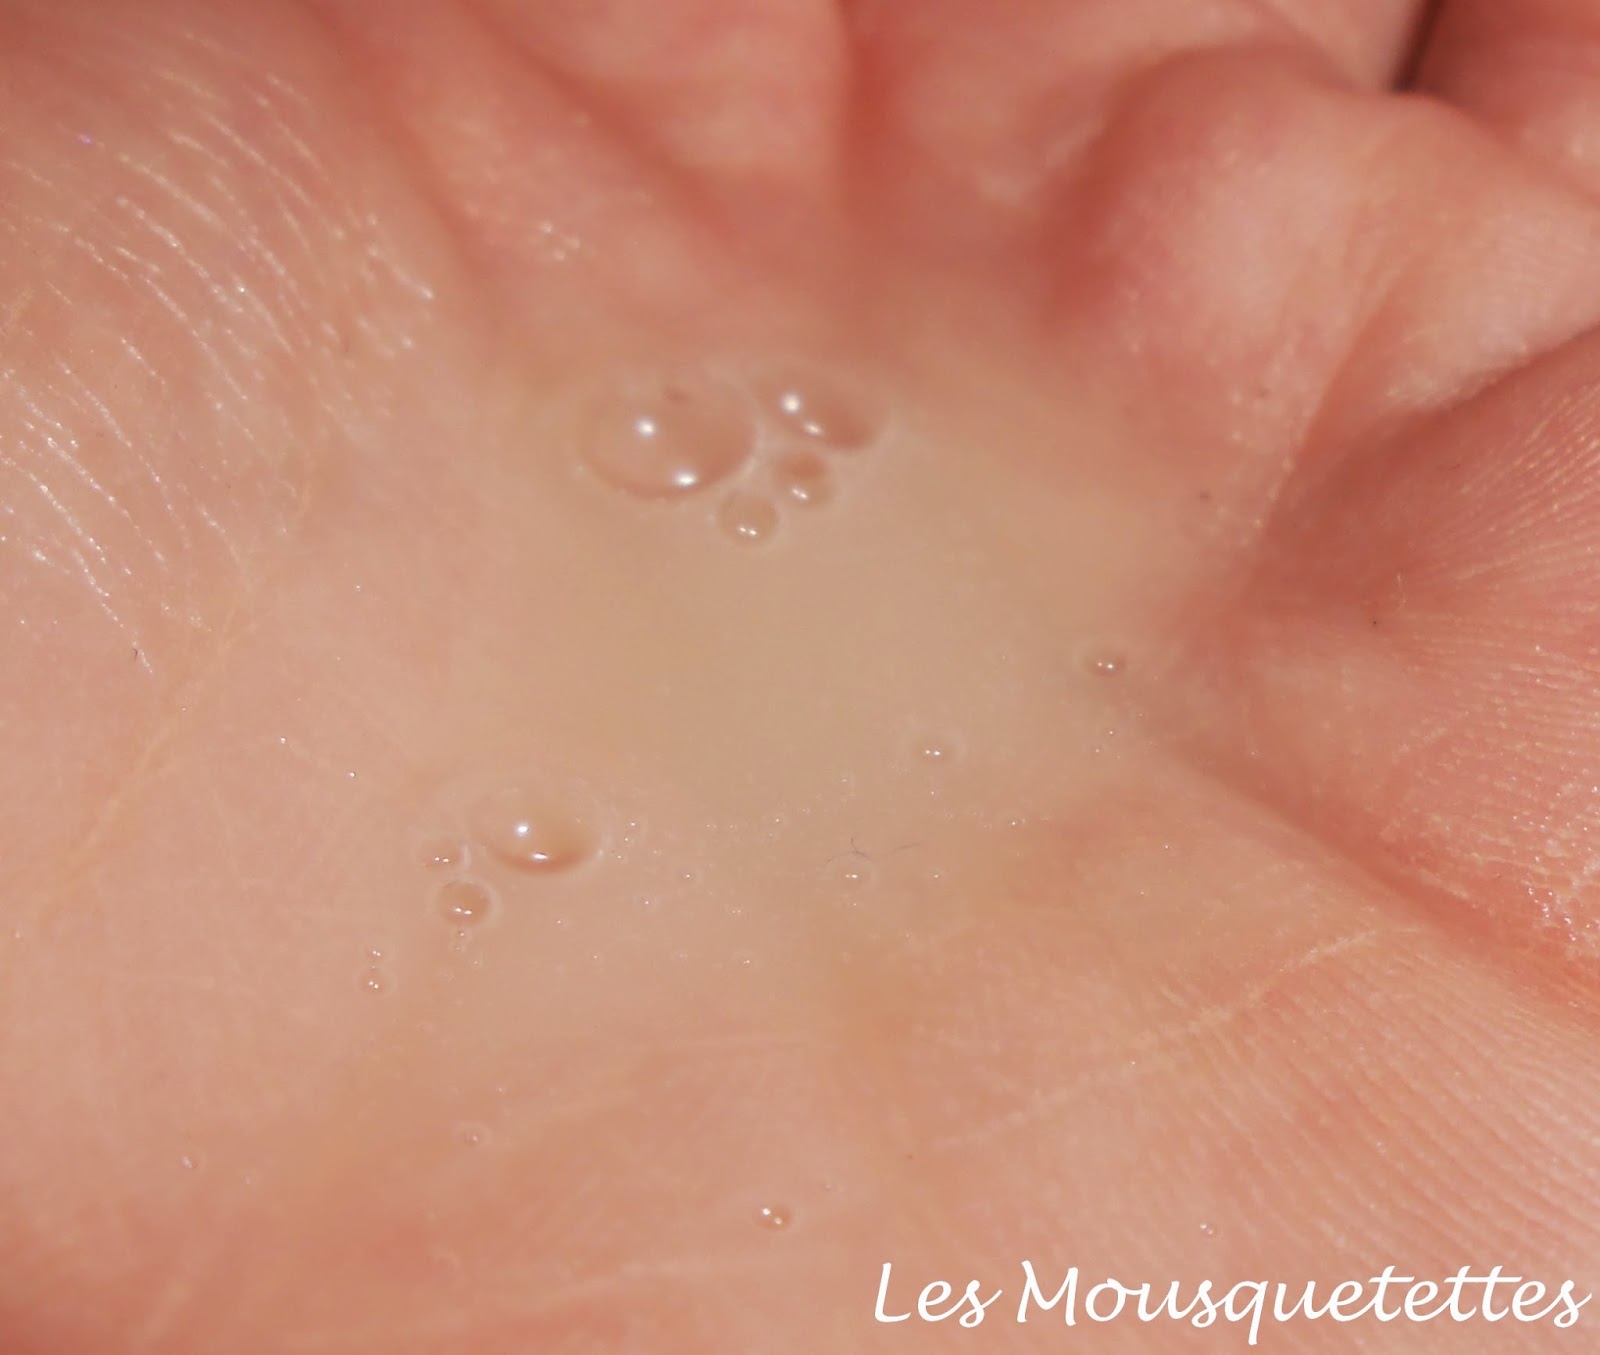 Shampoing Doux Equiderma Observatoire des Cosmétiques - Les Mousquetettes©